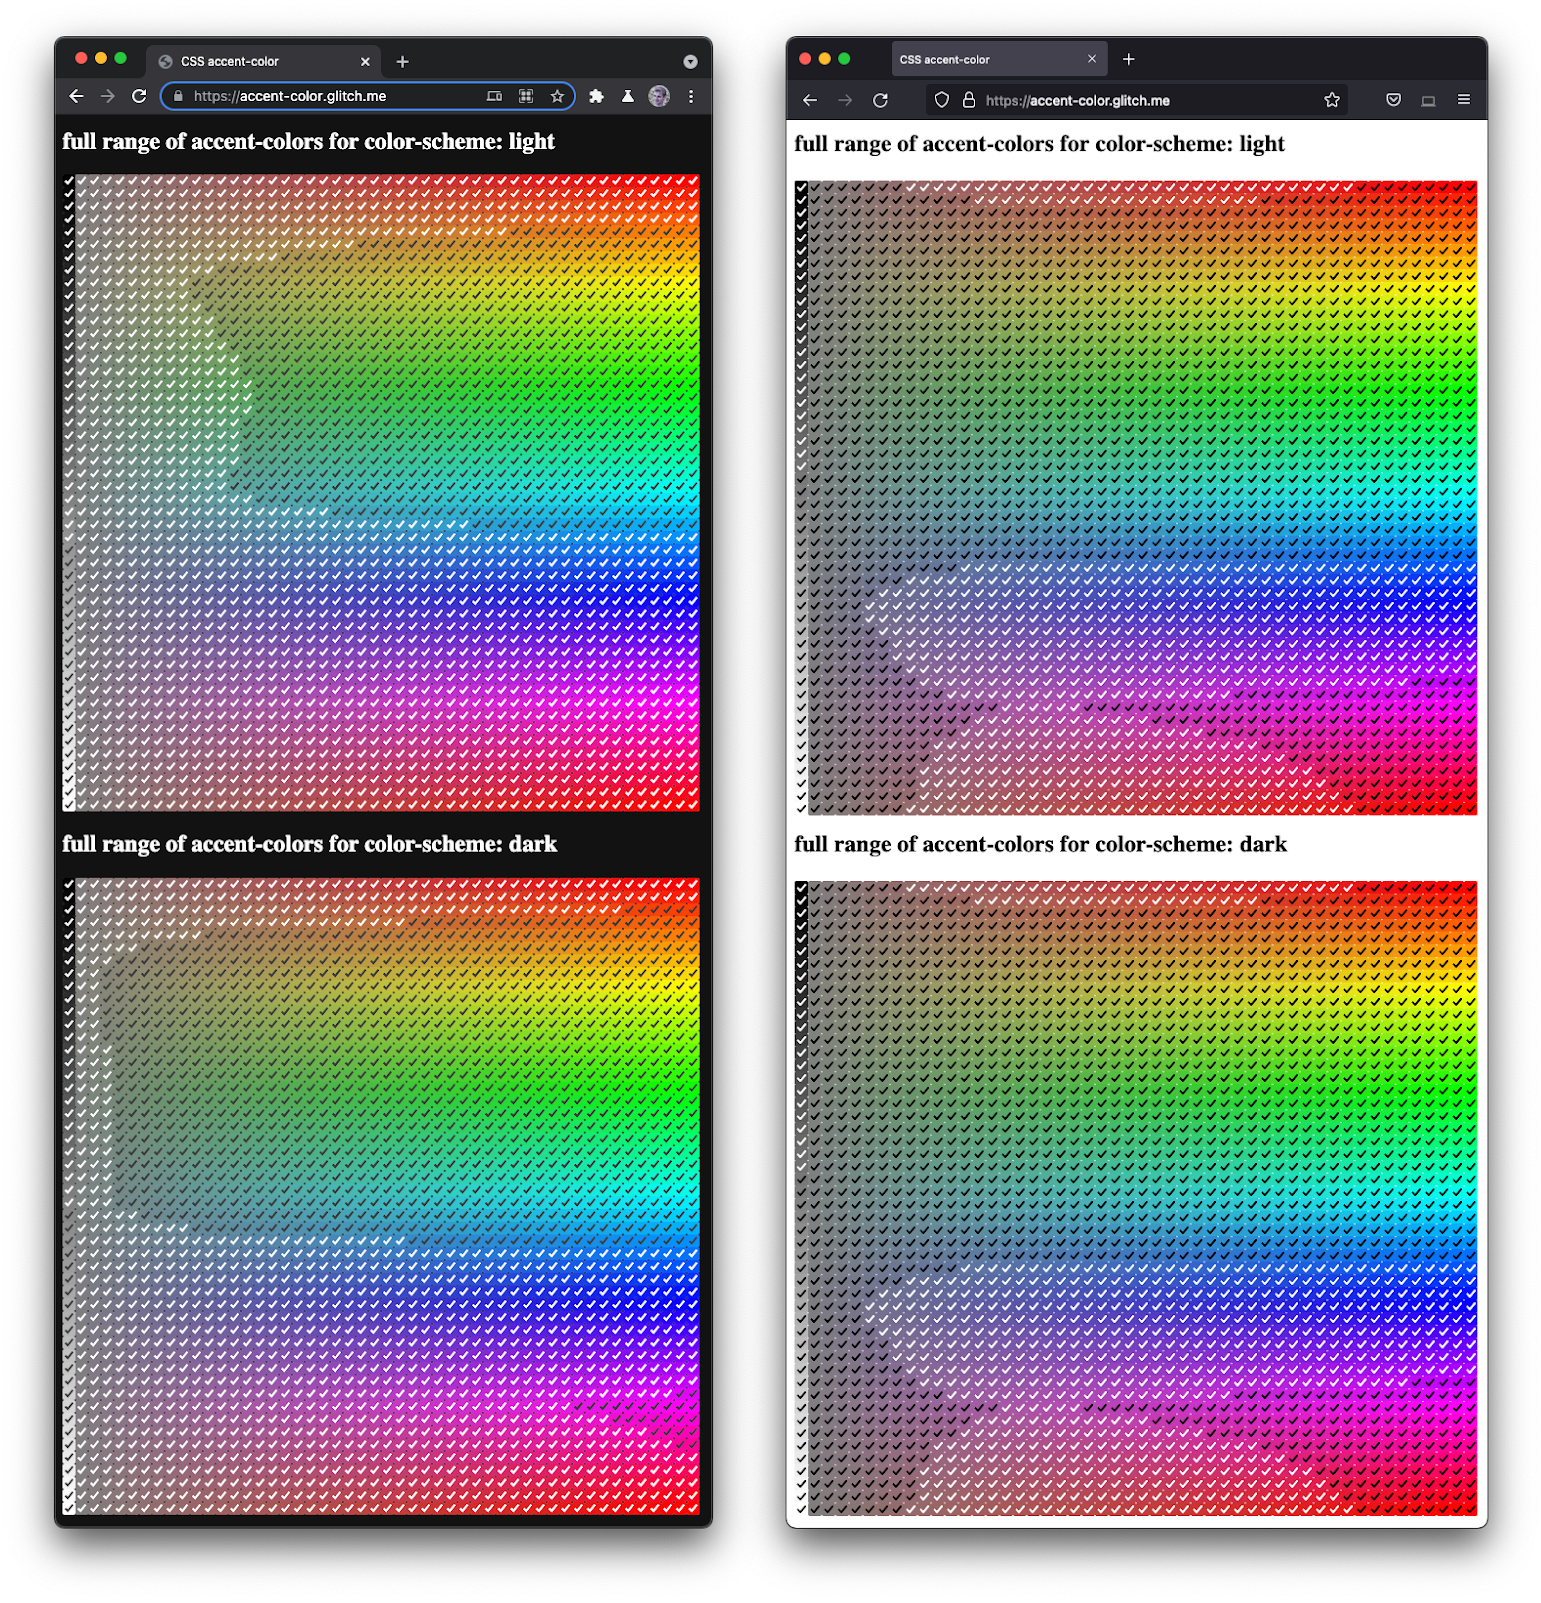 並排的 Firefox 和 Chromium 螢幕截圖
  會在各種色調與暗點之間呈現一整組核取方塊。